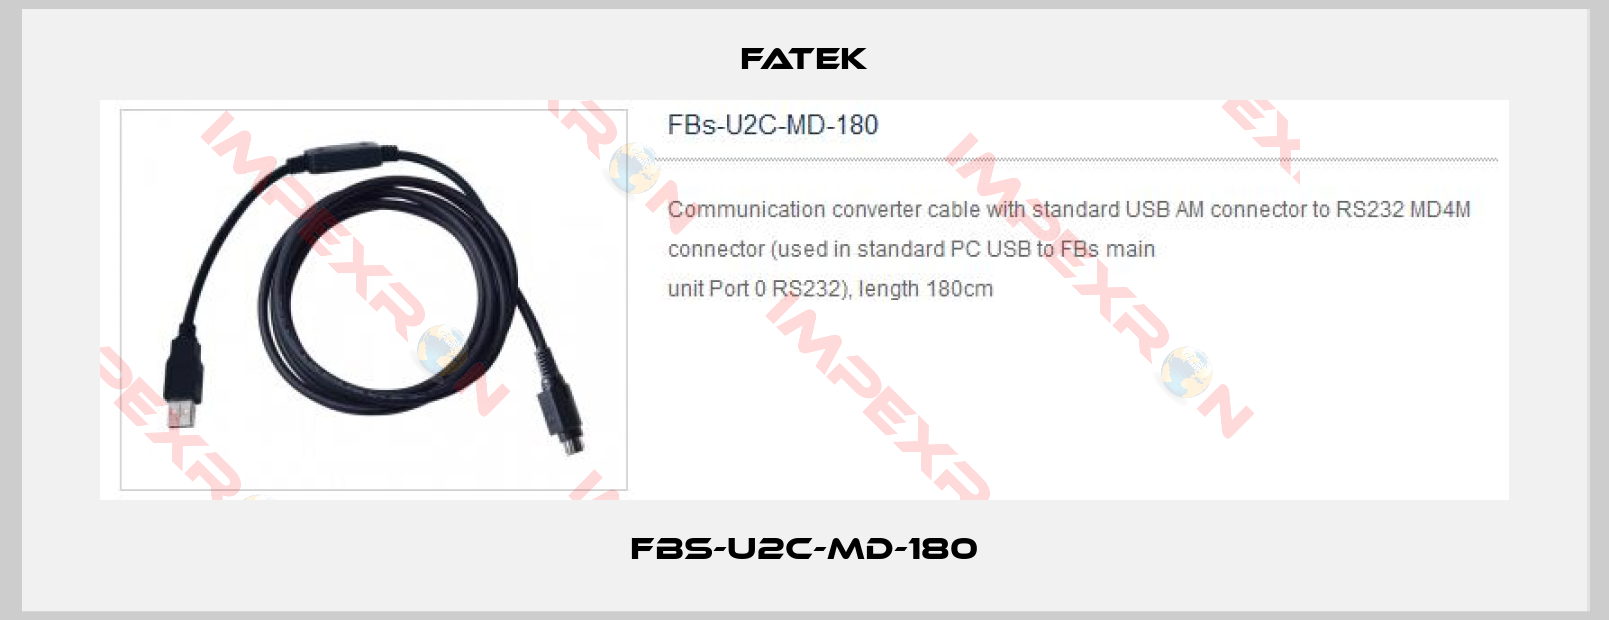 Fatek-FBS-U2C-MD-180